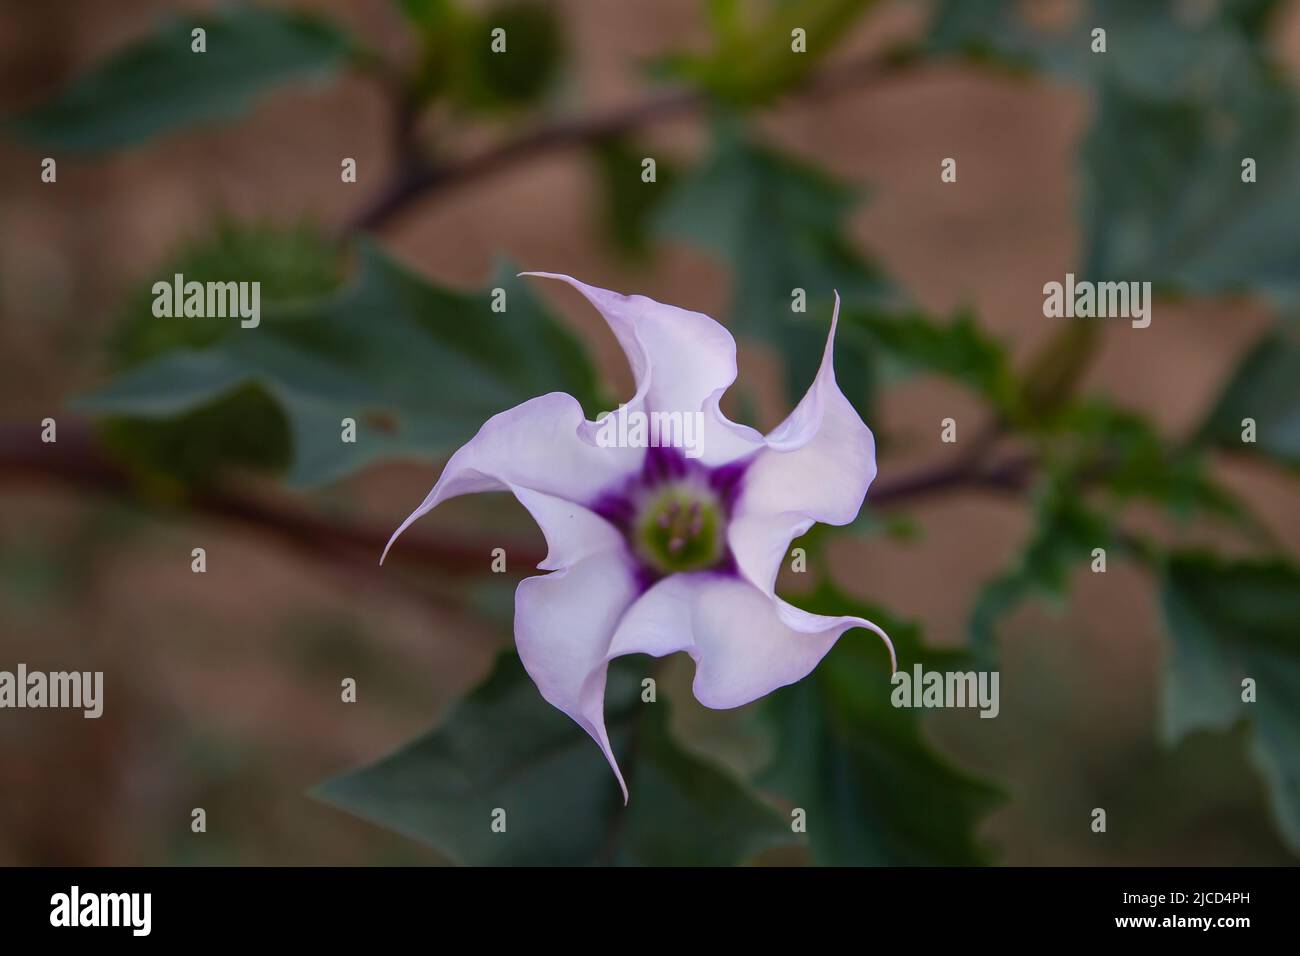 Nightshade (Datura stramonium) purplish trumpet-shaped flower Stock Photo